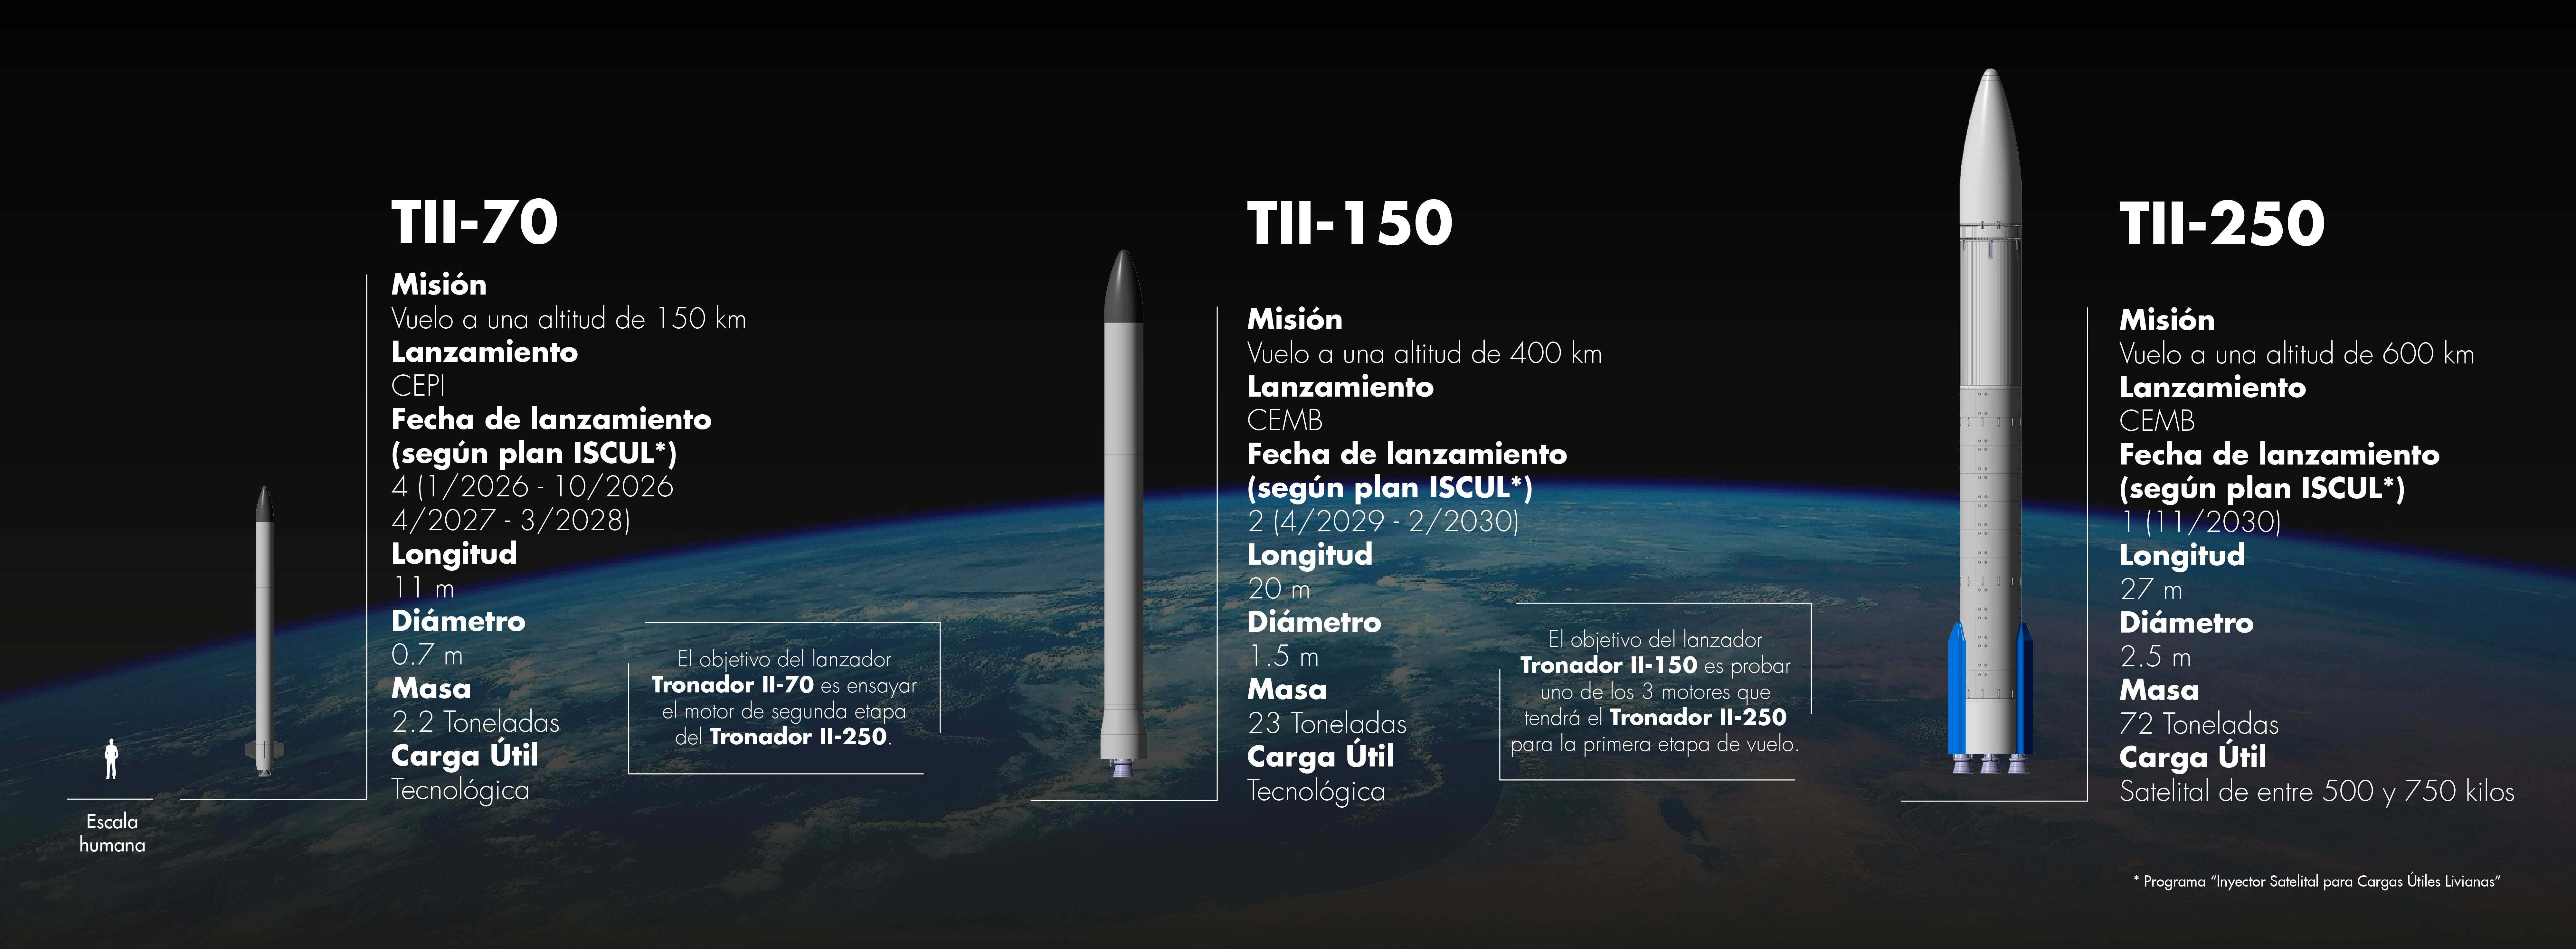 Los modelos de cohete Tronador II que serán construidos en la próxima década